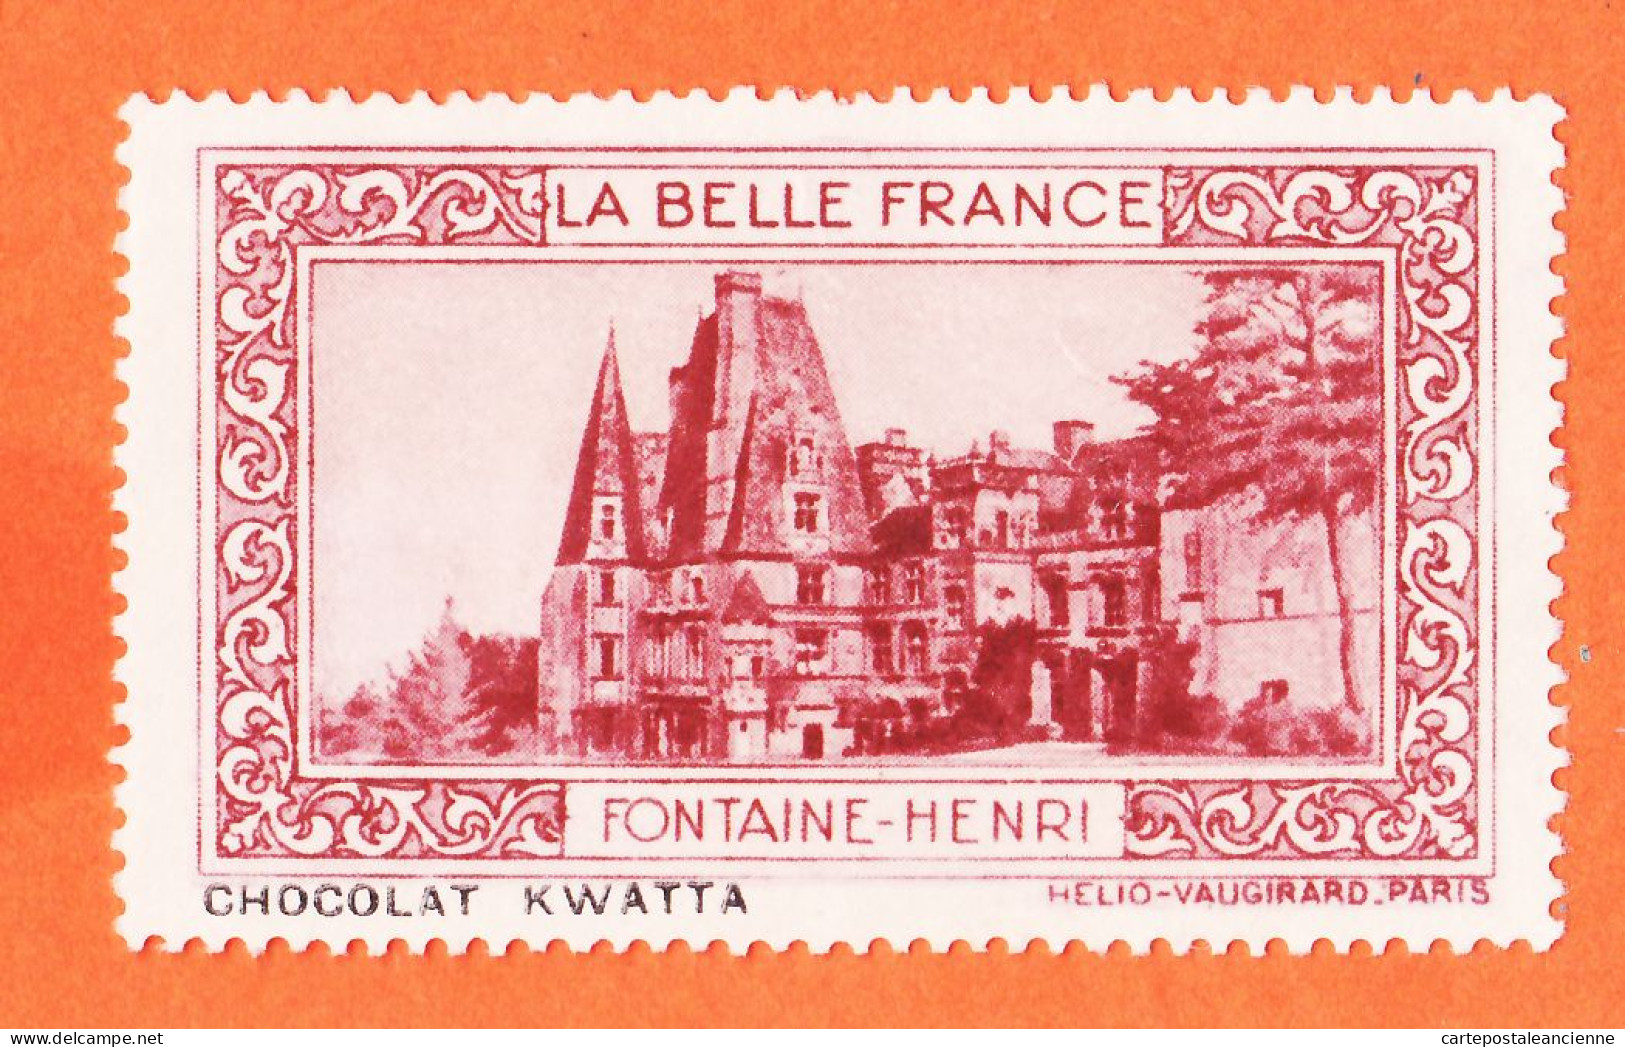 31045 / FONTAINE-HENRI 14-Calvados Pub Chocolat KWATTA Vignette Collection BELLE FRANCE HELIO-VAUGIRARD Erinnophilie - Tourisme (Vignettes)